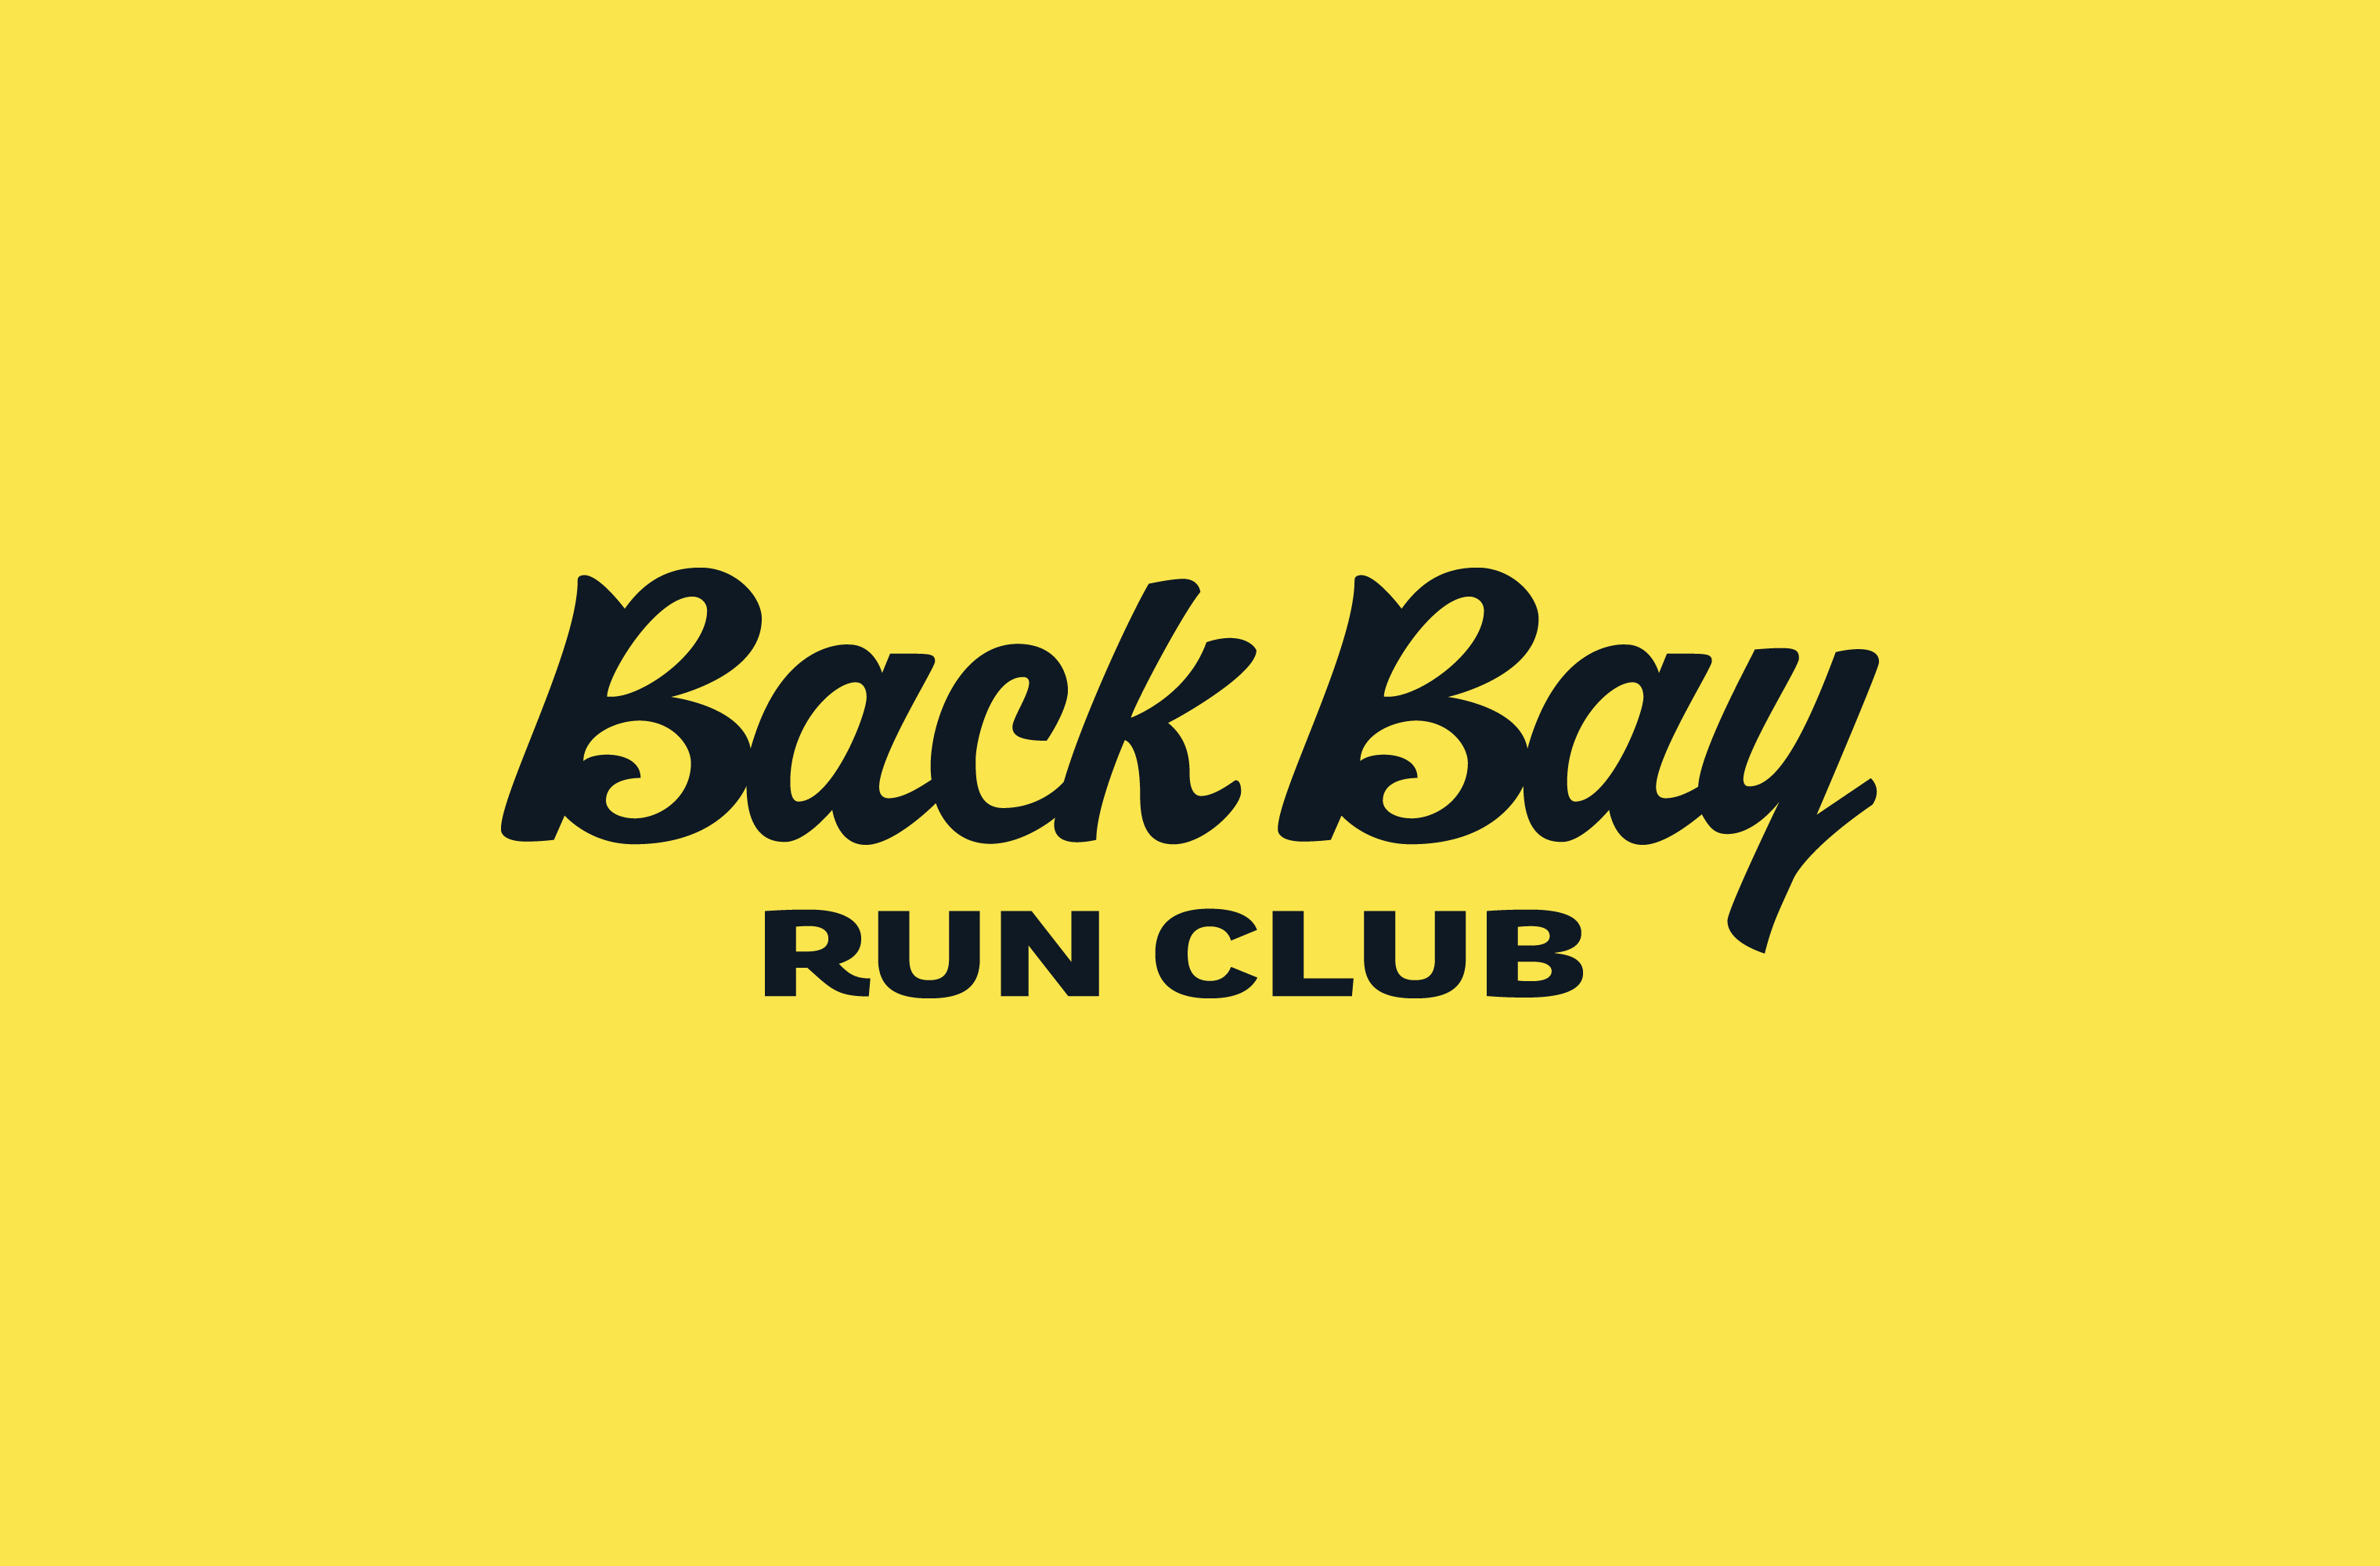 Black Back Bay Run Club script wordmark on a yellow background